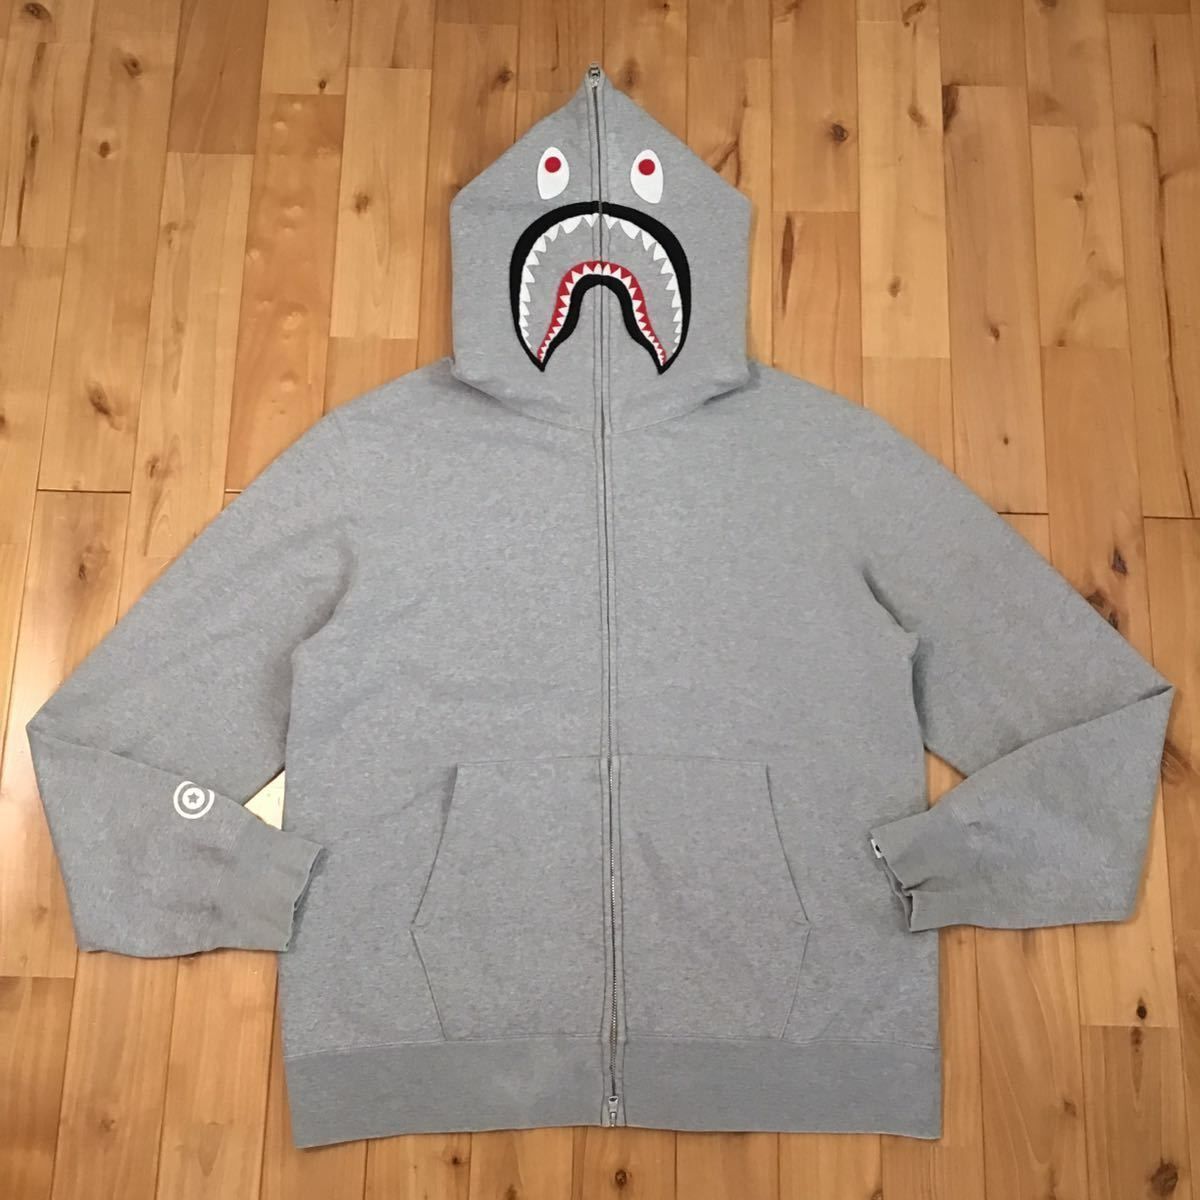 grey shark hoodie シャークパーカー エイプ bape1000円割引可能です 